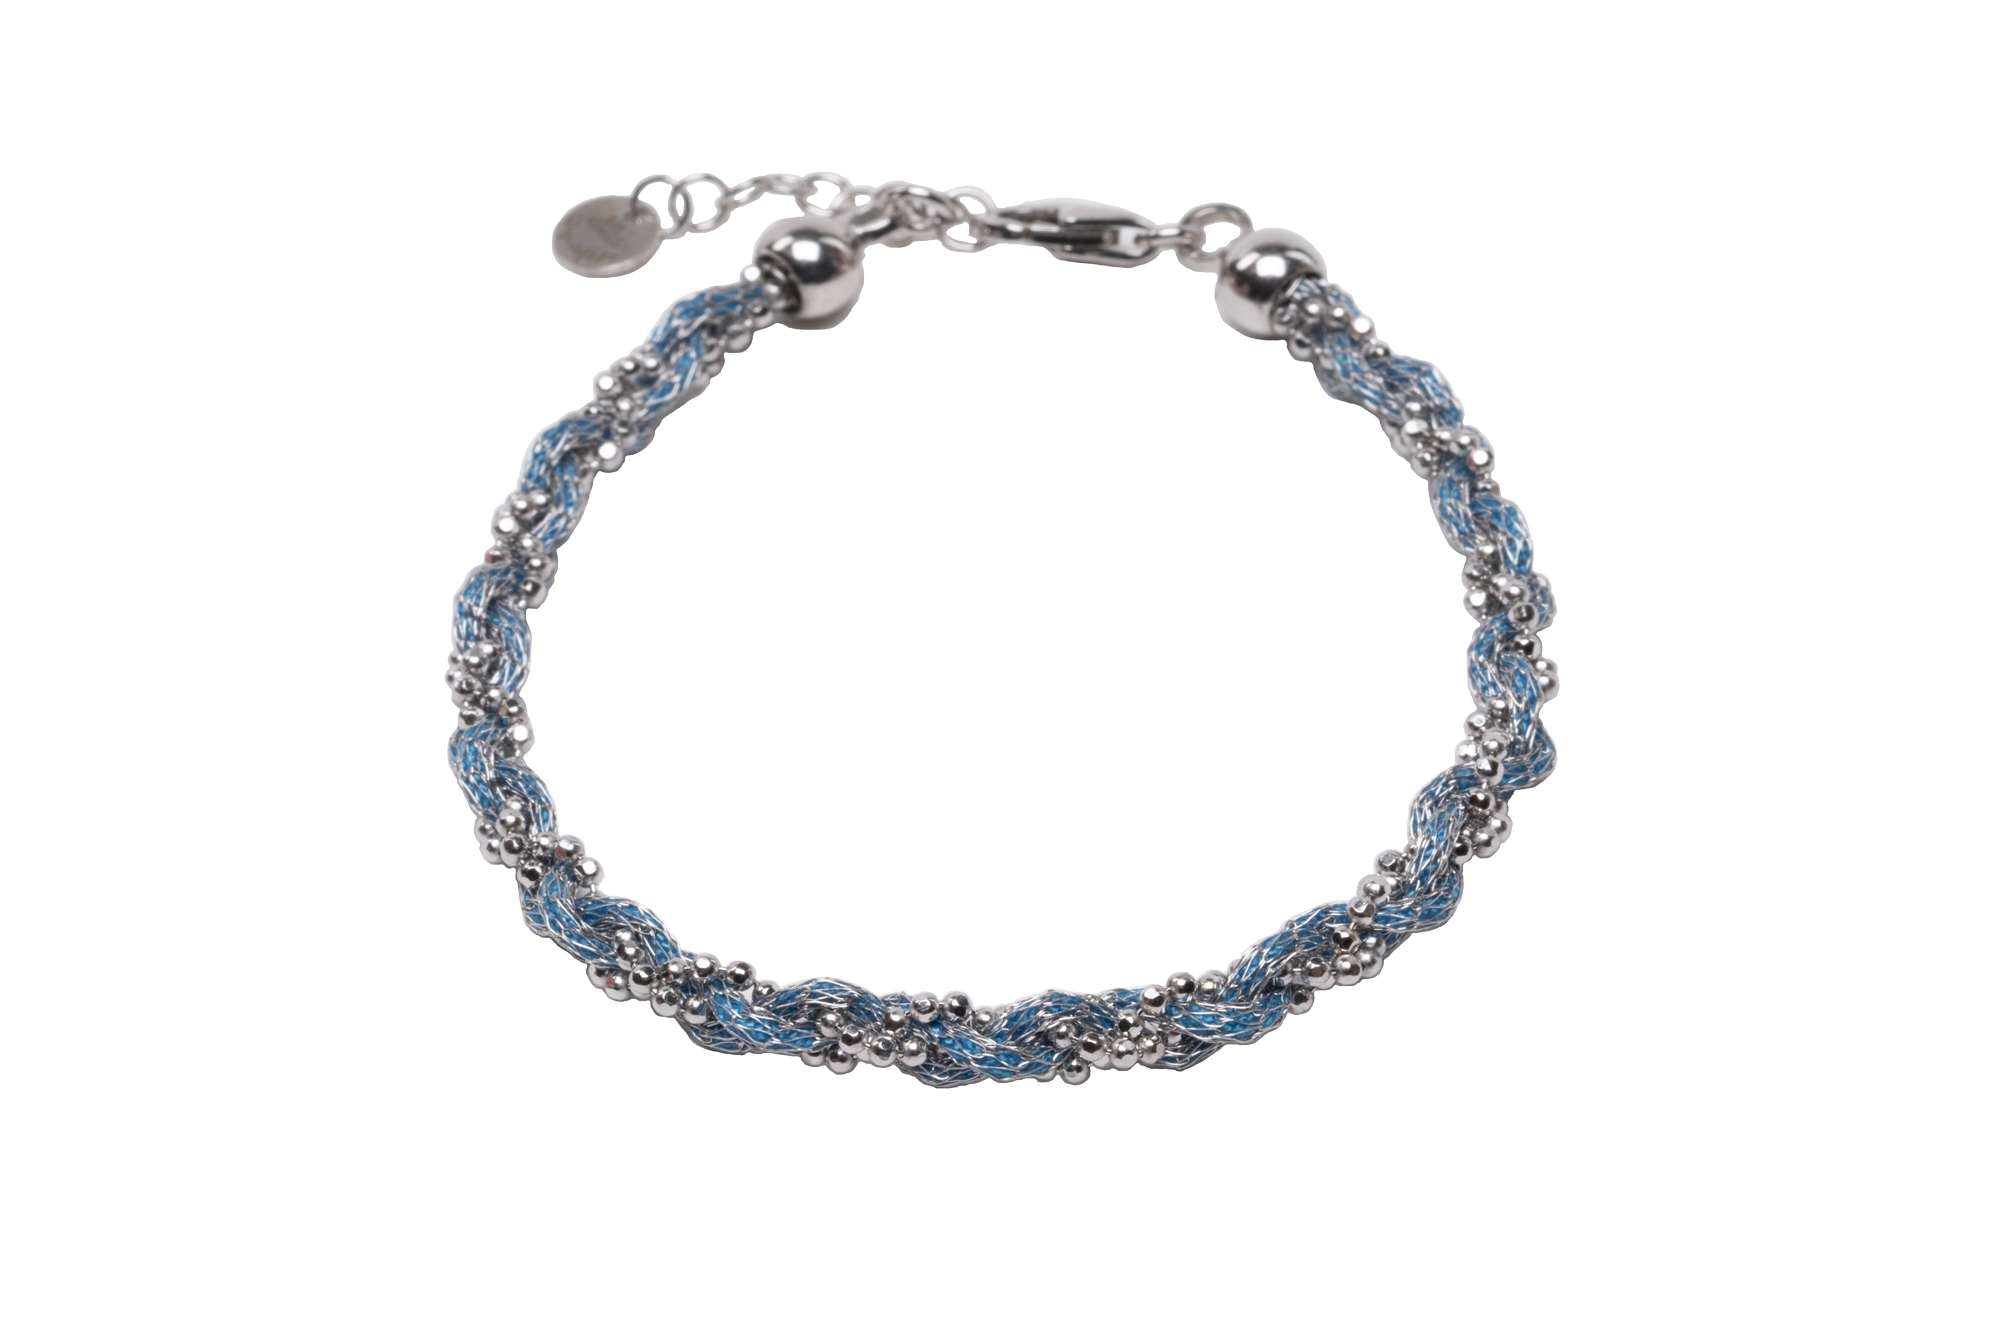 Bracciale-intrecciato-colorato-azzurro-Argentofilato-in-argento-925